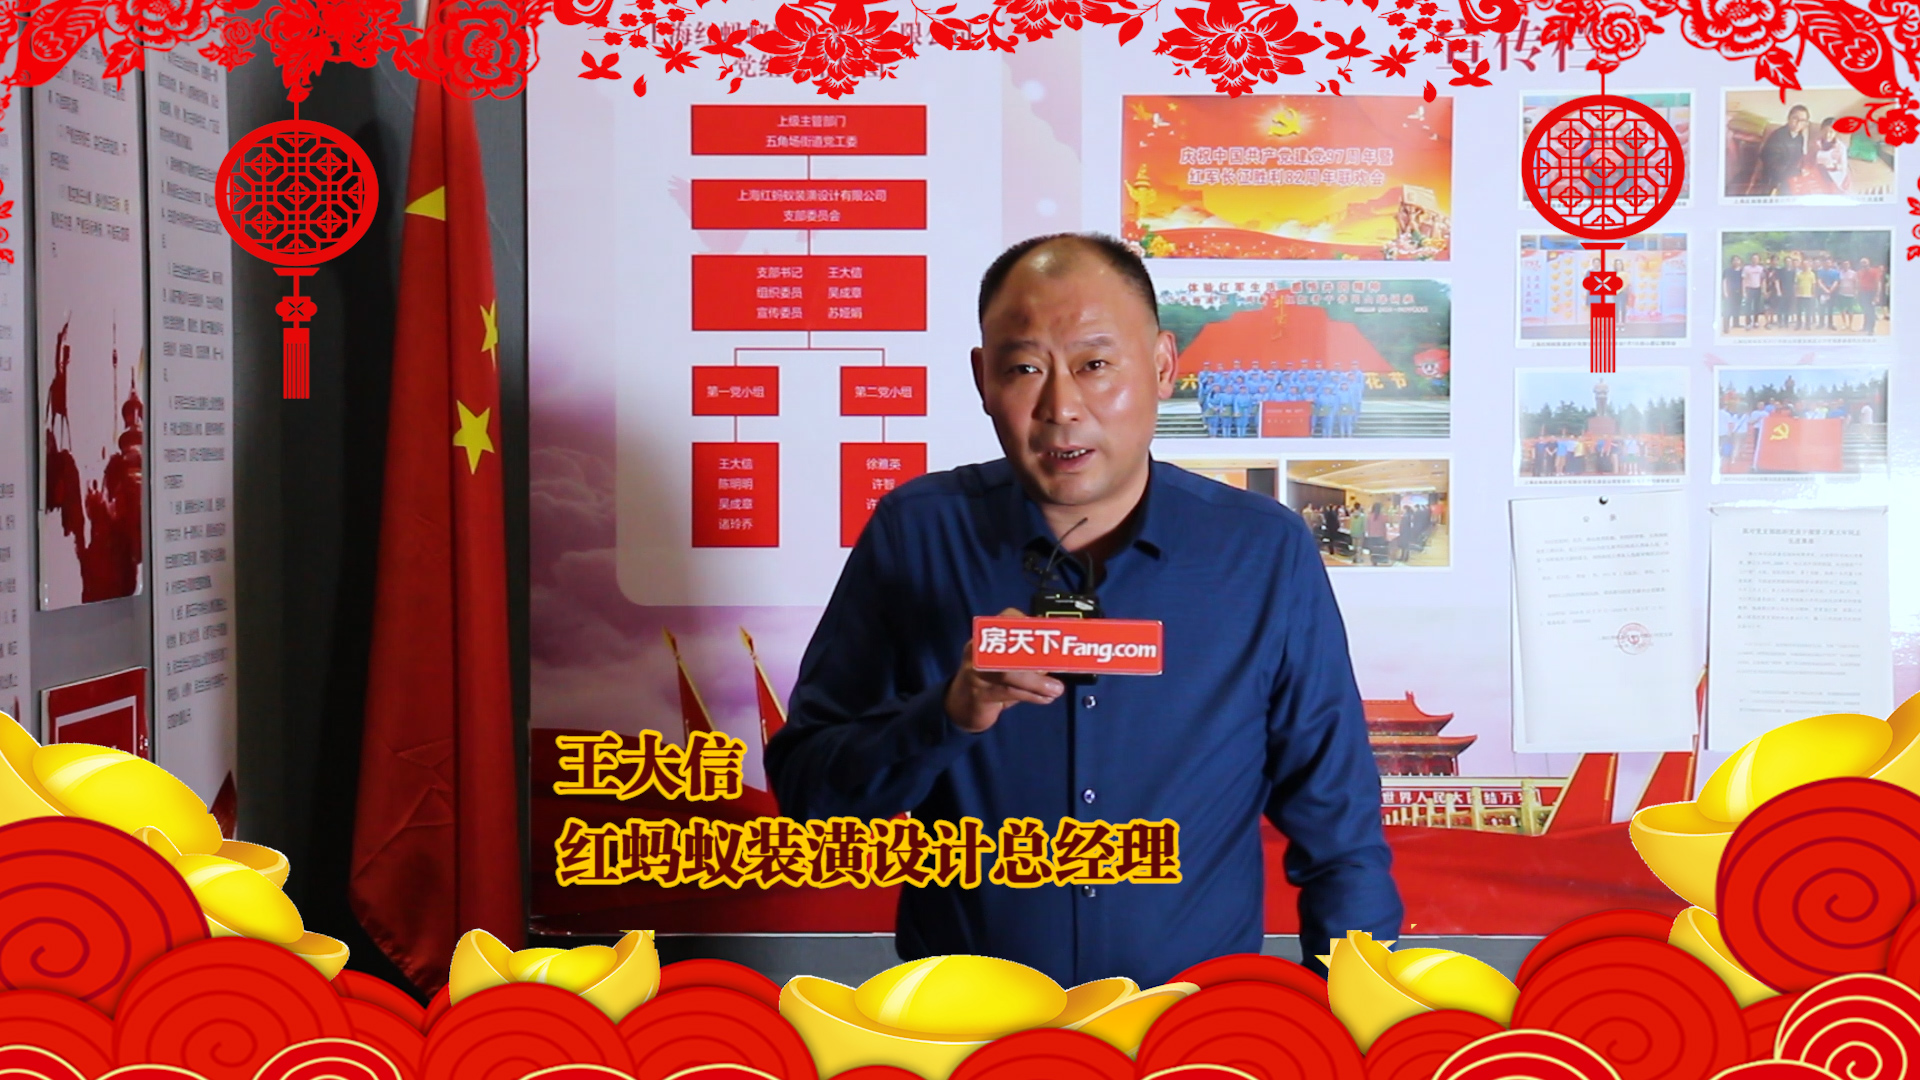 上海红蚂蚁装潢设计总经理王大信给大家拜年